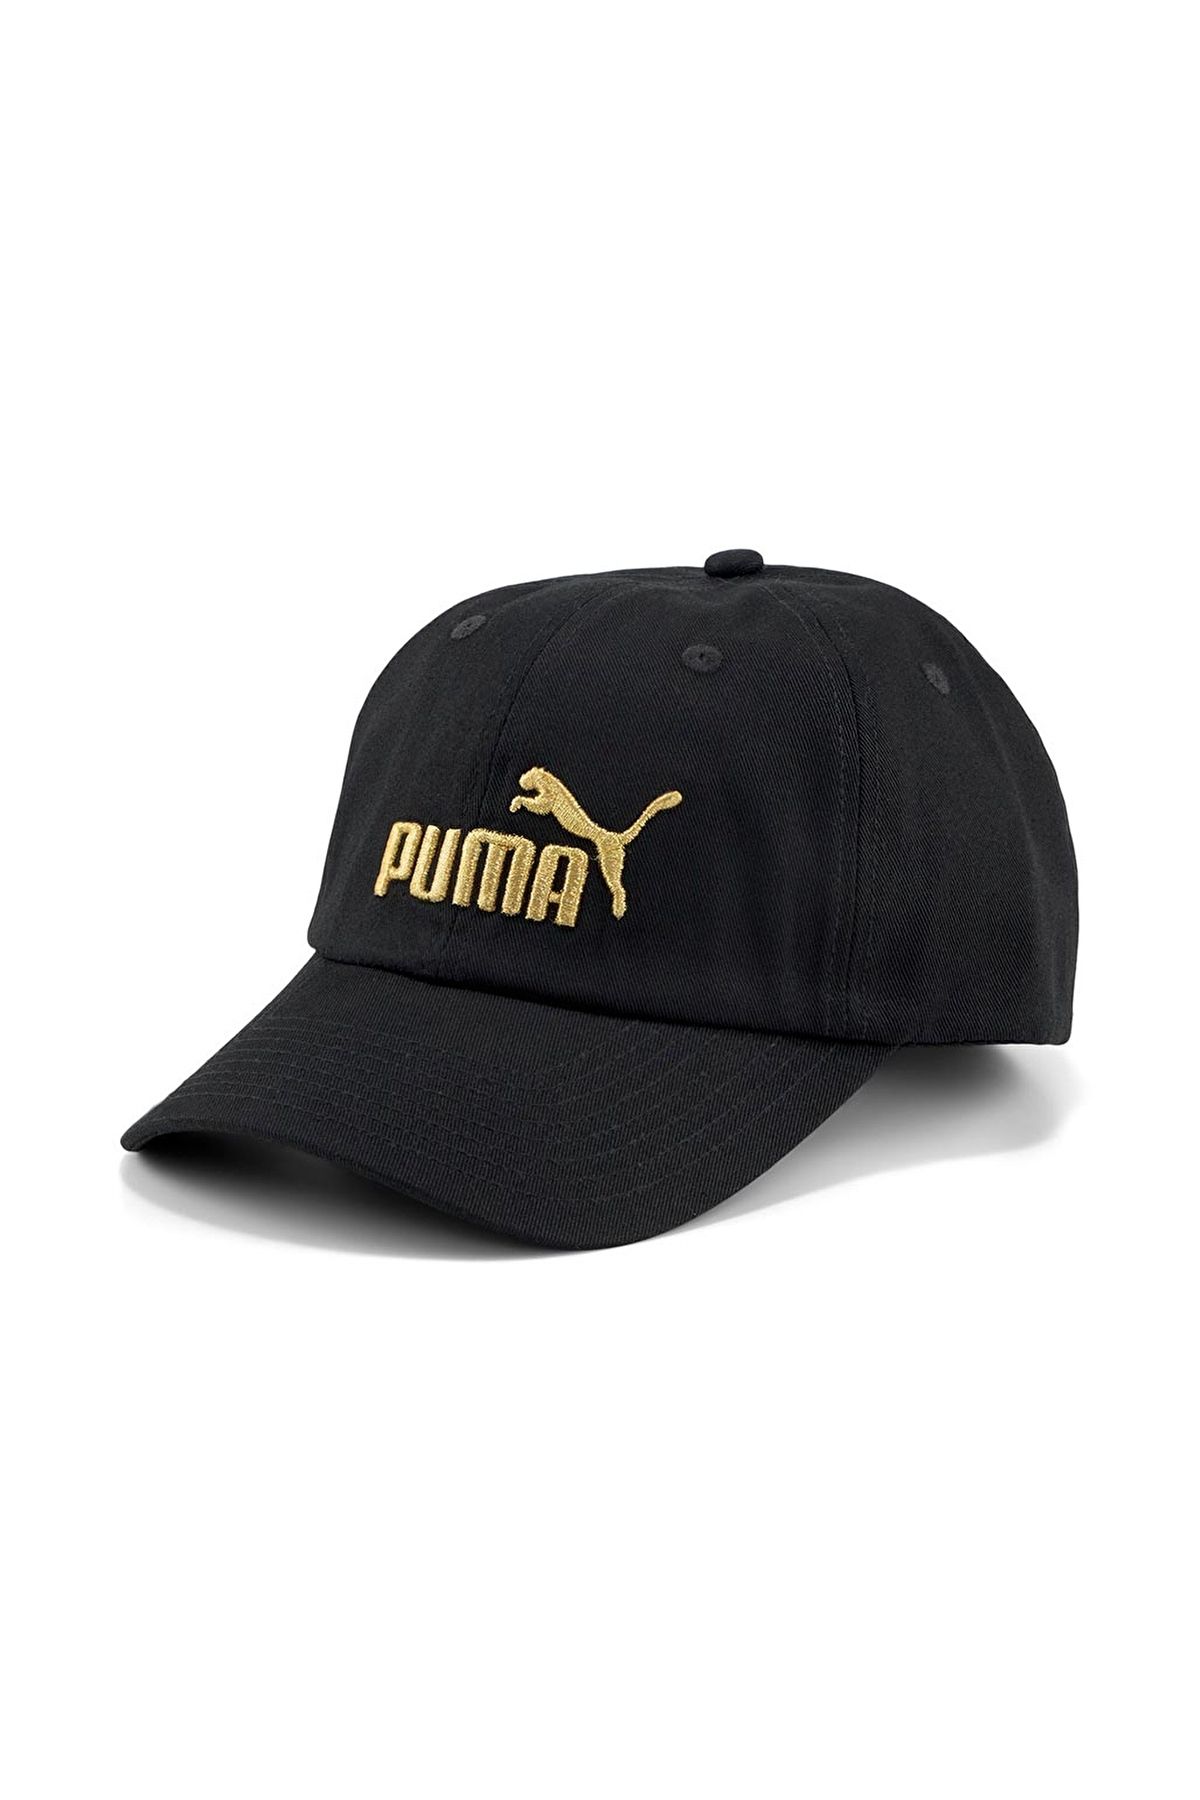 Puma Essentials No.1 Bb Cap Şapka Siyah Gold